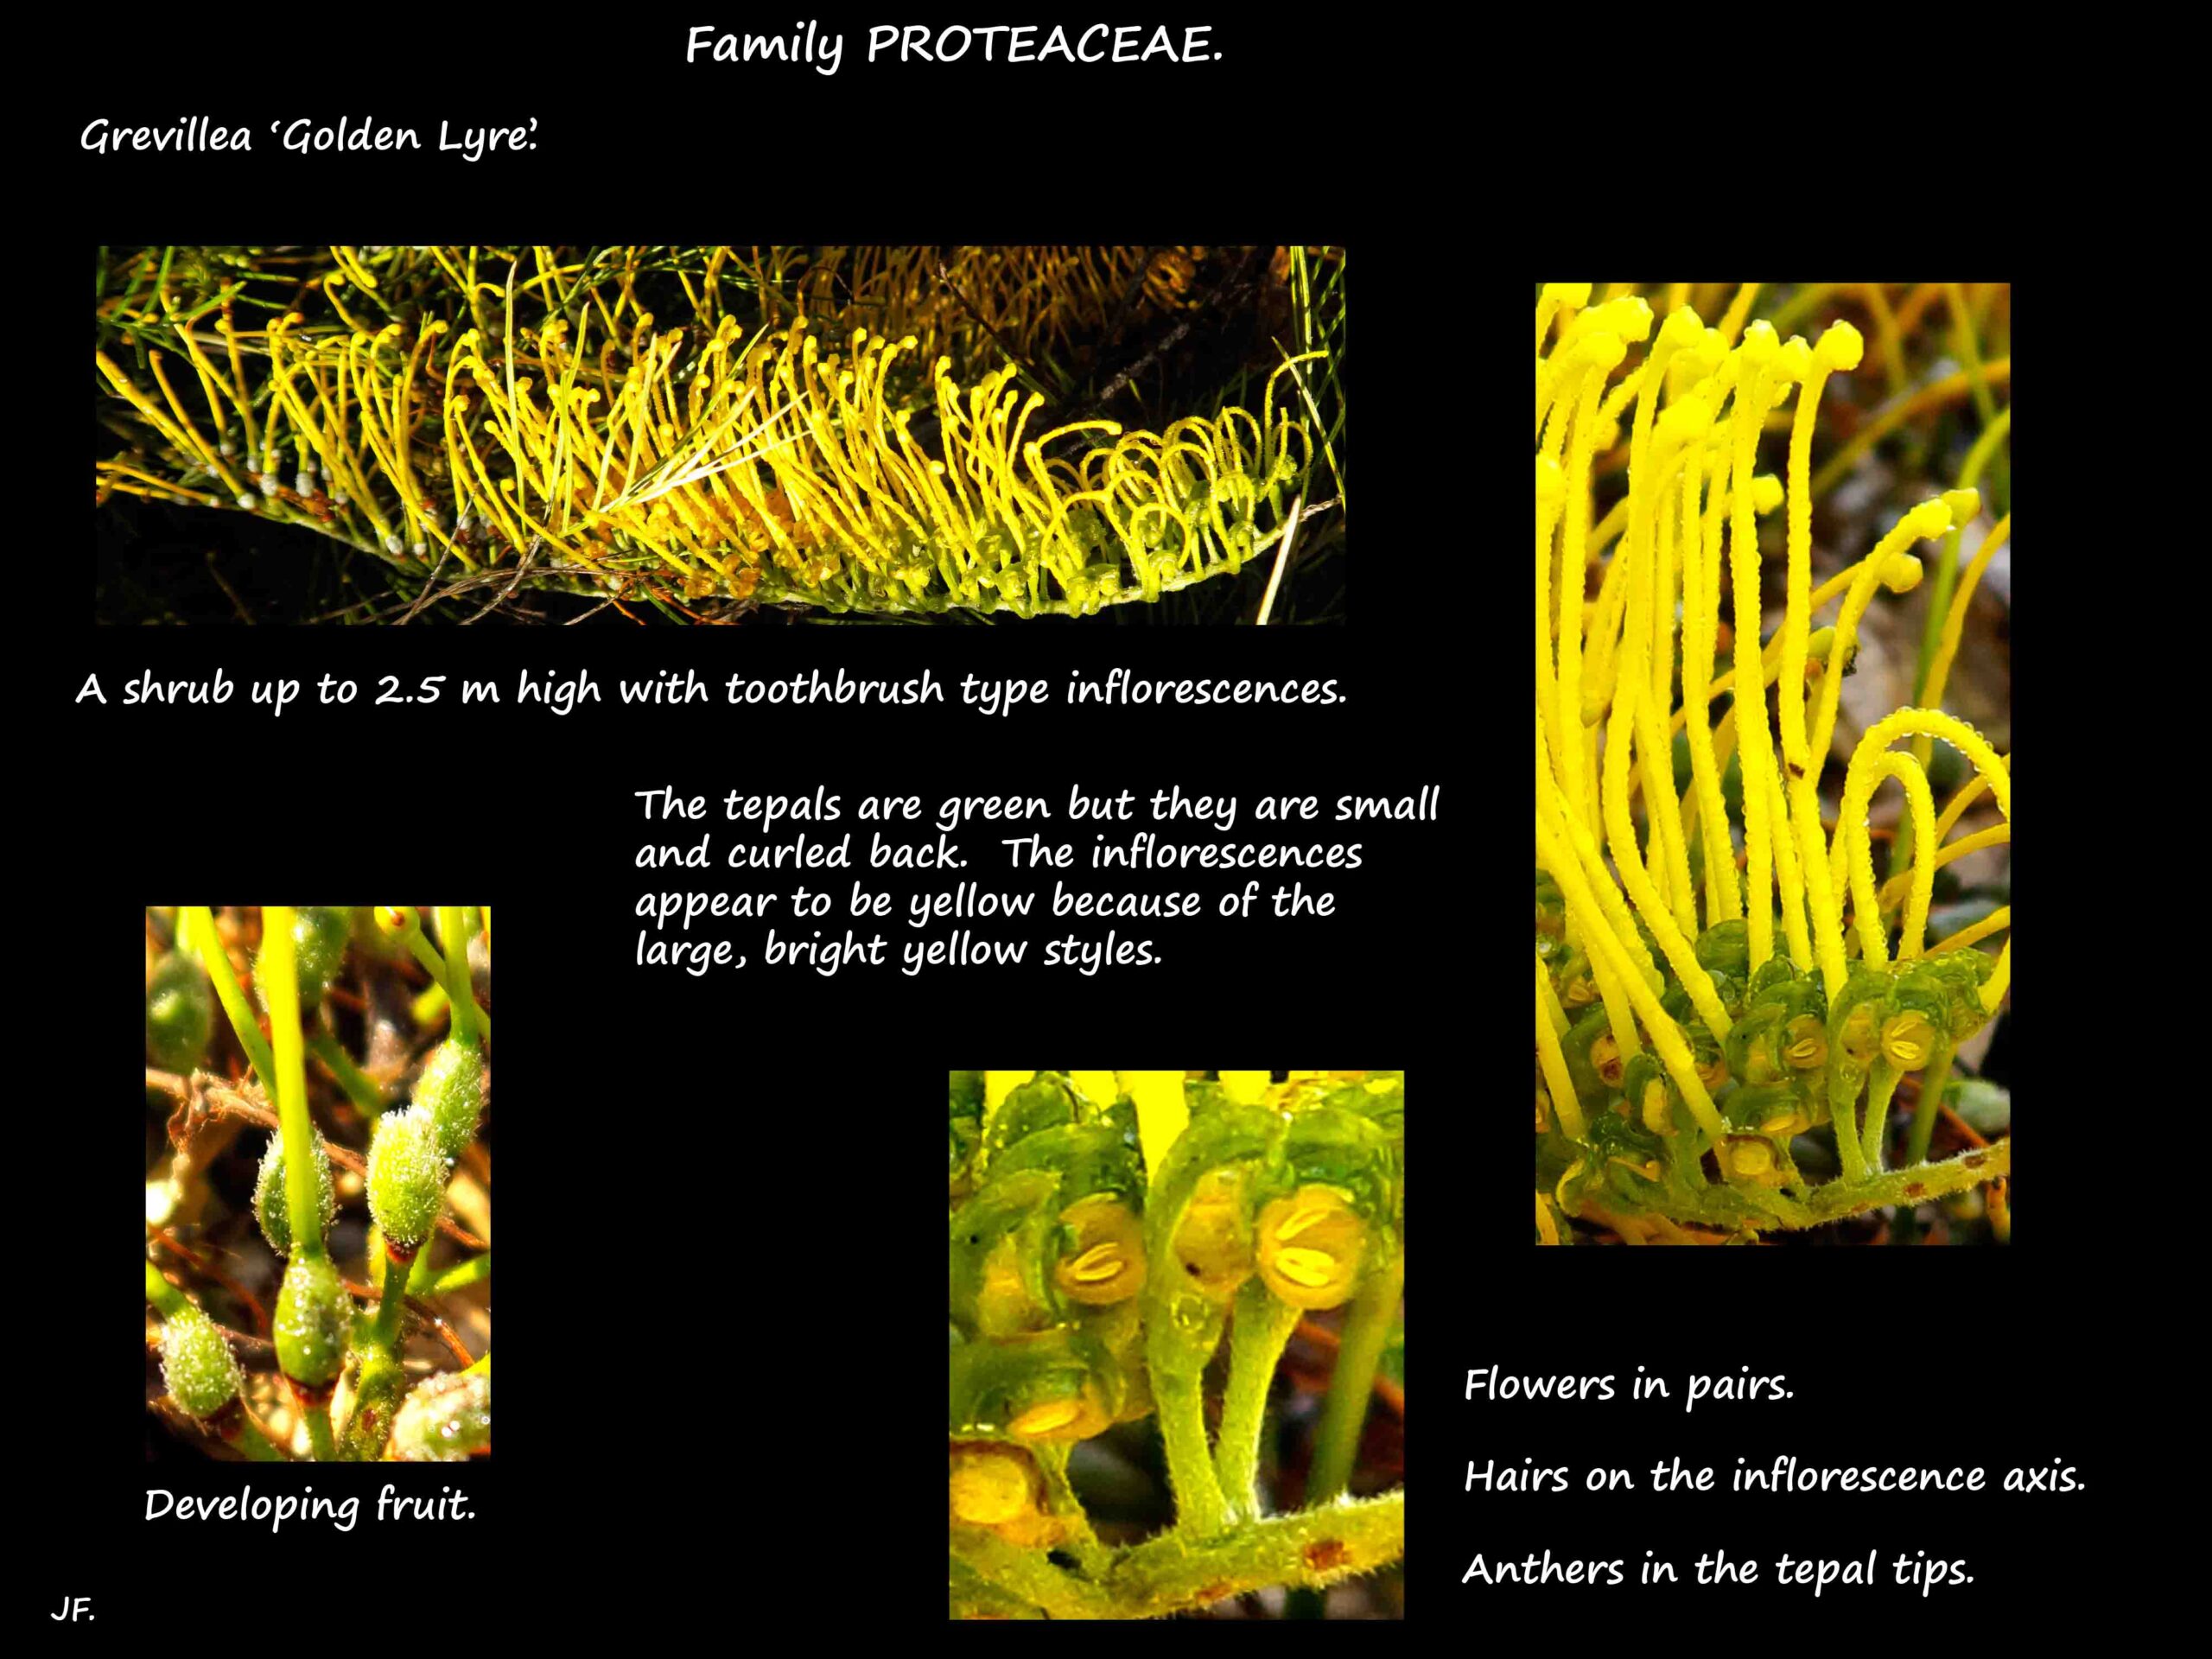 1 Grevillea 'Golden Lyre' flowers